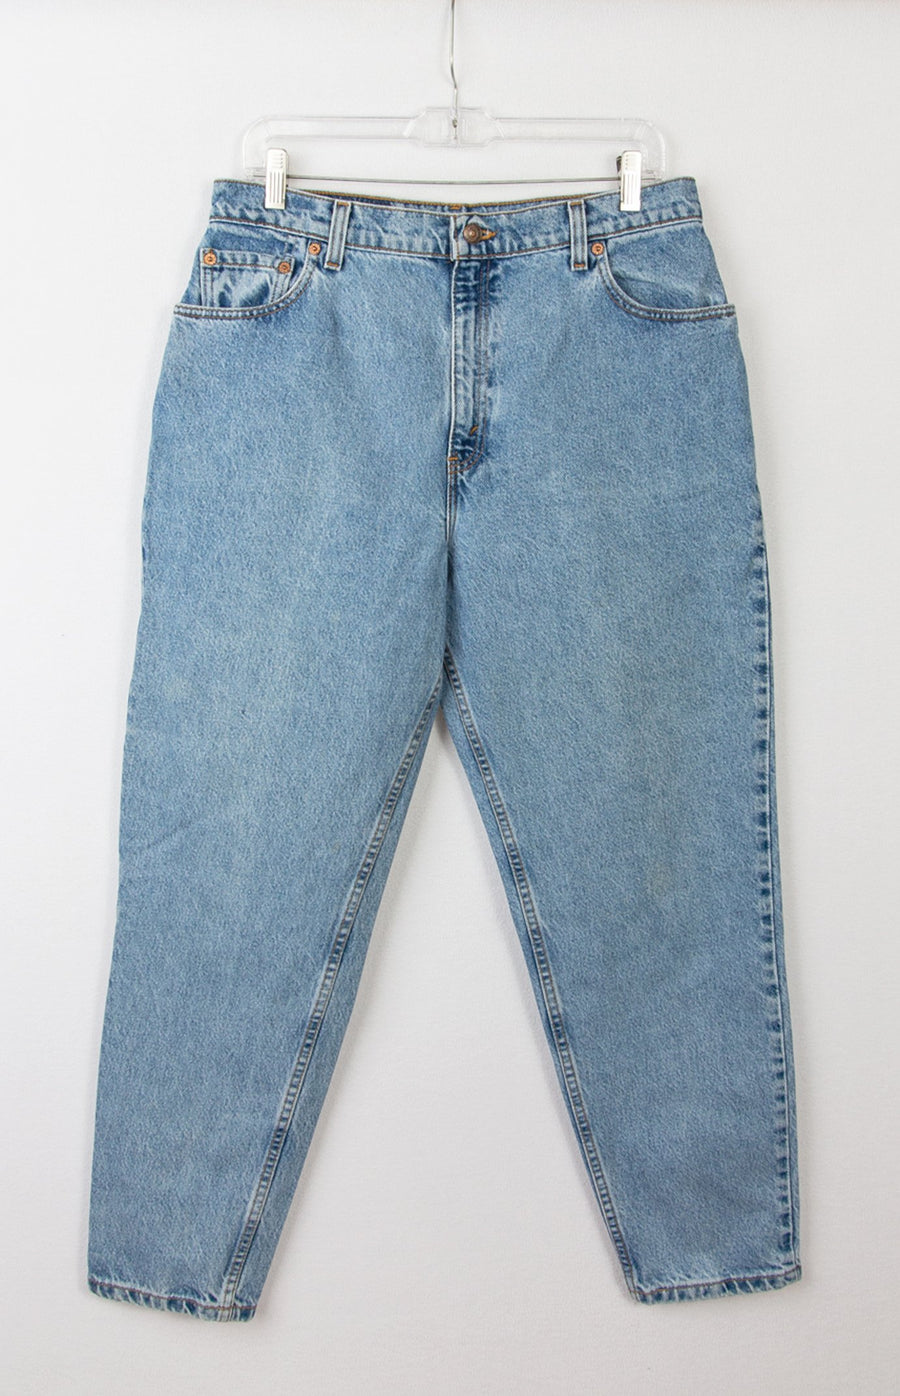 Levi's 551 Jeans | Vintage Levis Jeans | GOAT Vintage